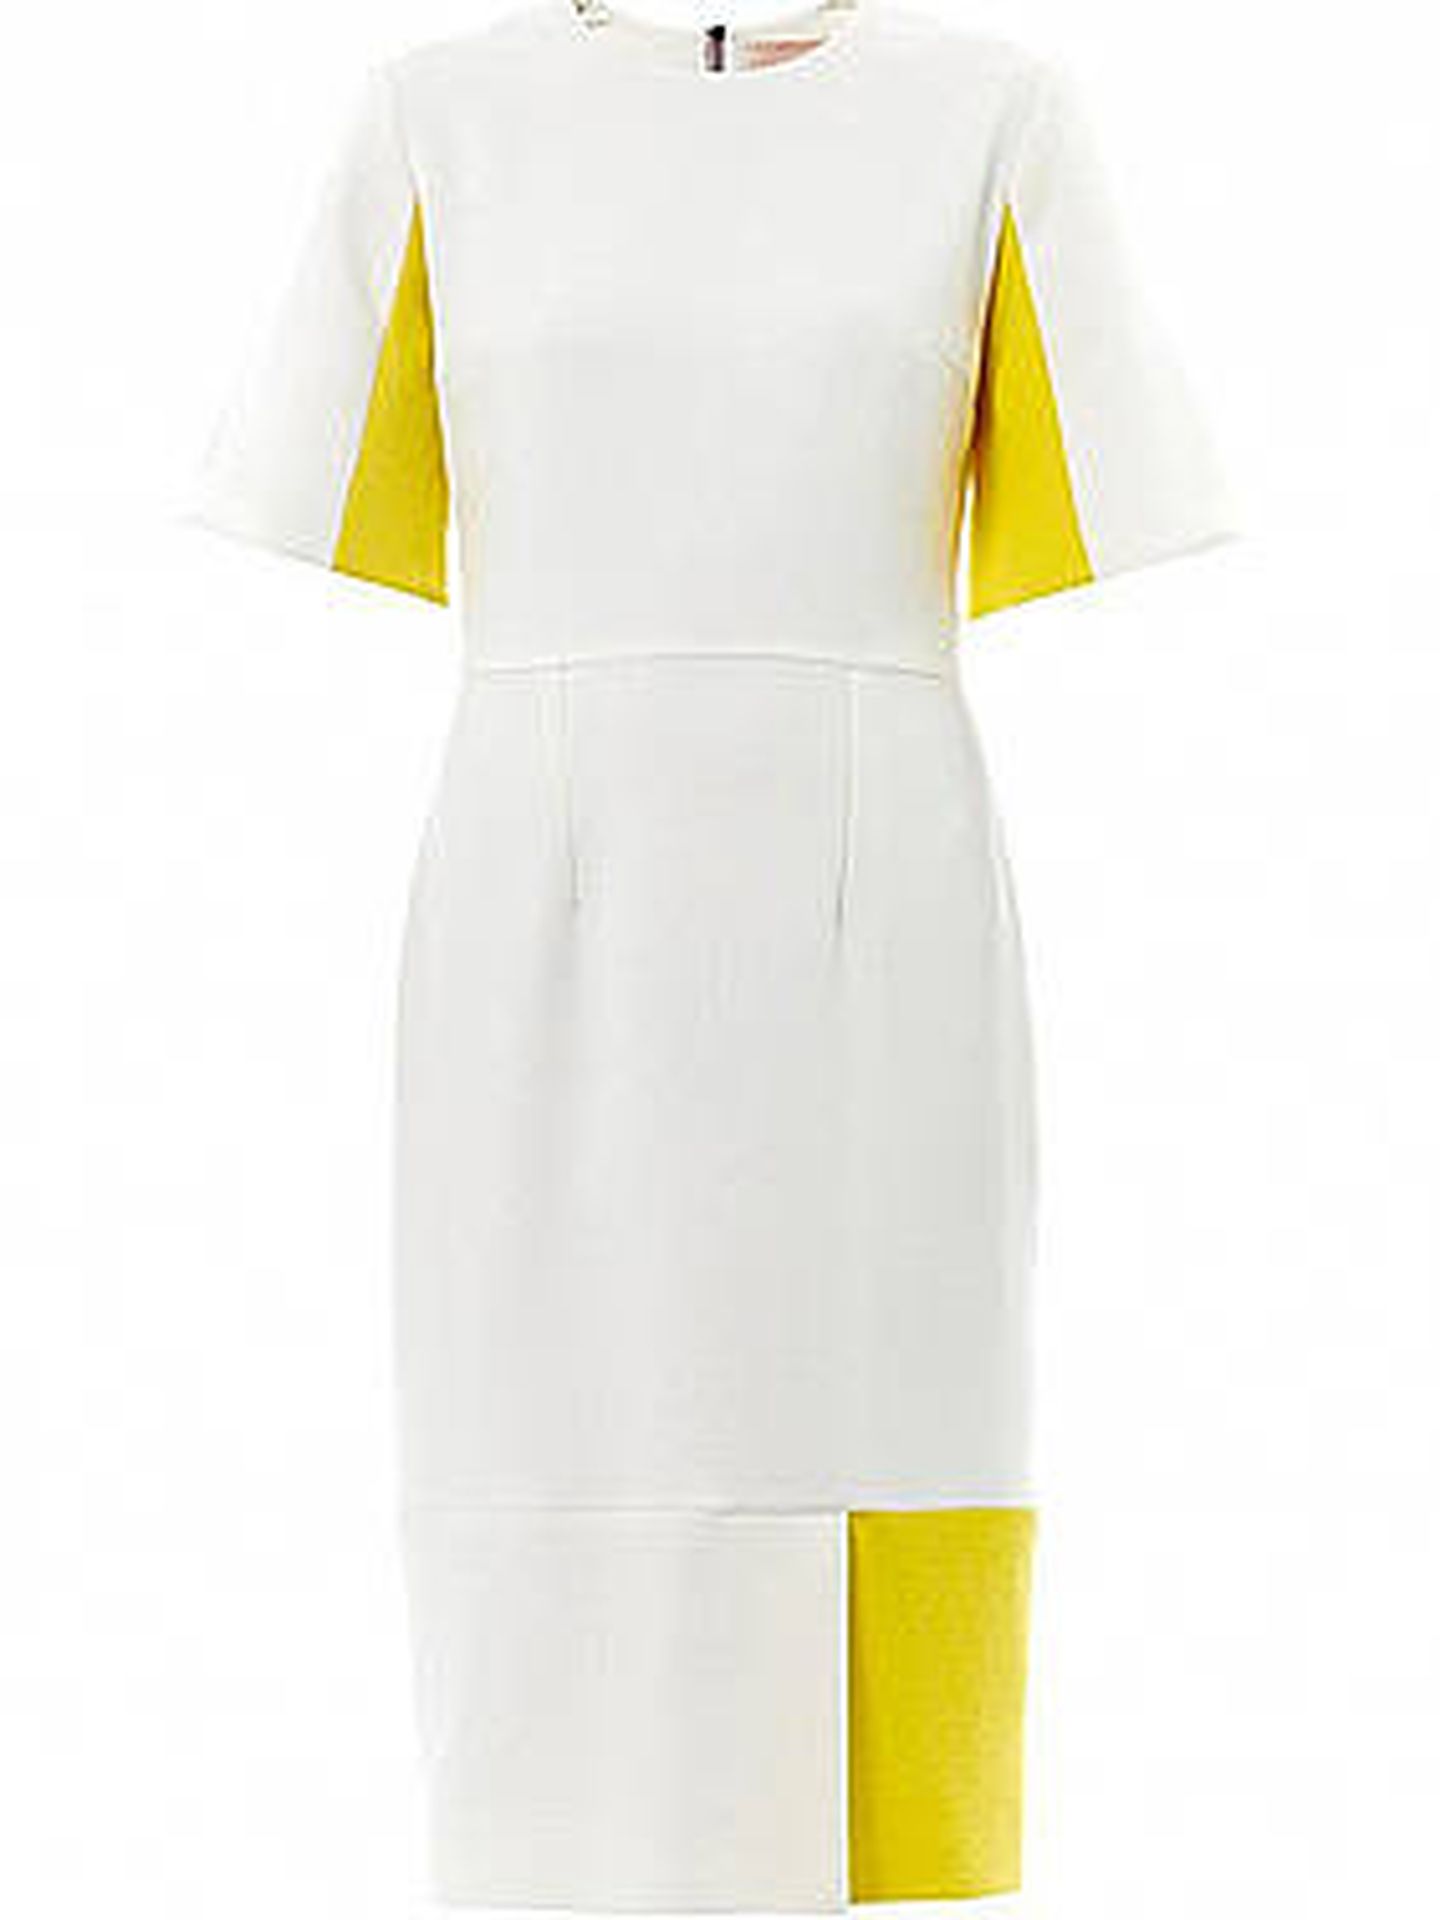 El vestido de Roksanda Ilincic en el que se inspiró el de Kate Middleton. (Cortesía)